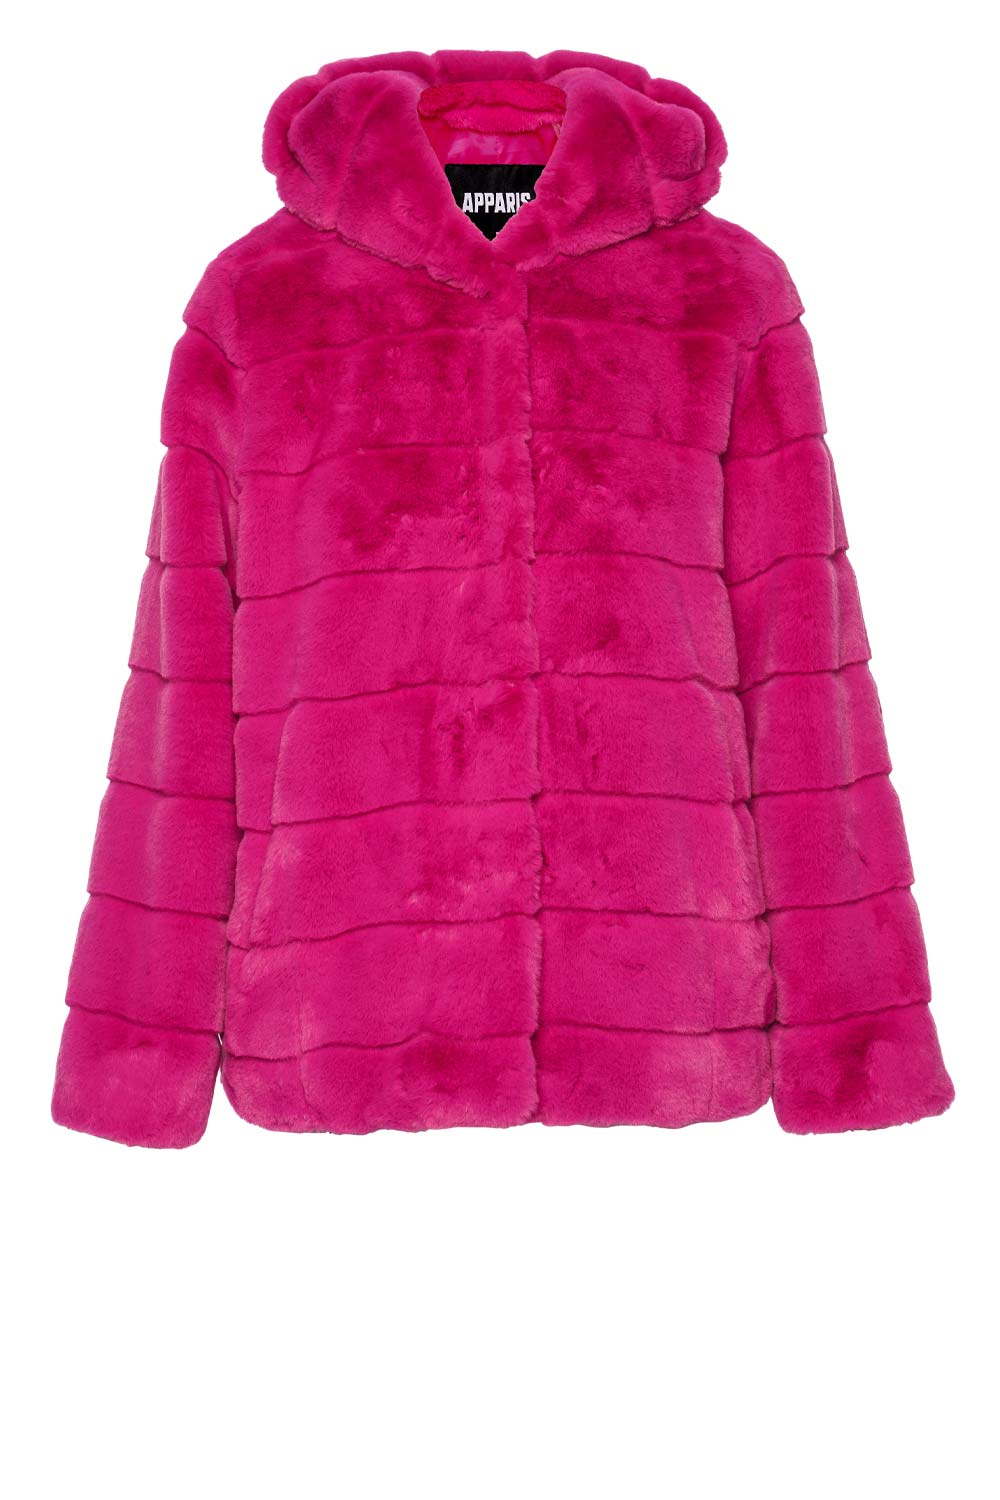 APPARIS Goldie Confetti Pink Faux Fur Jacket